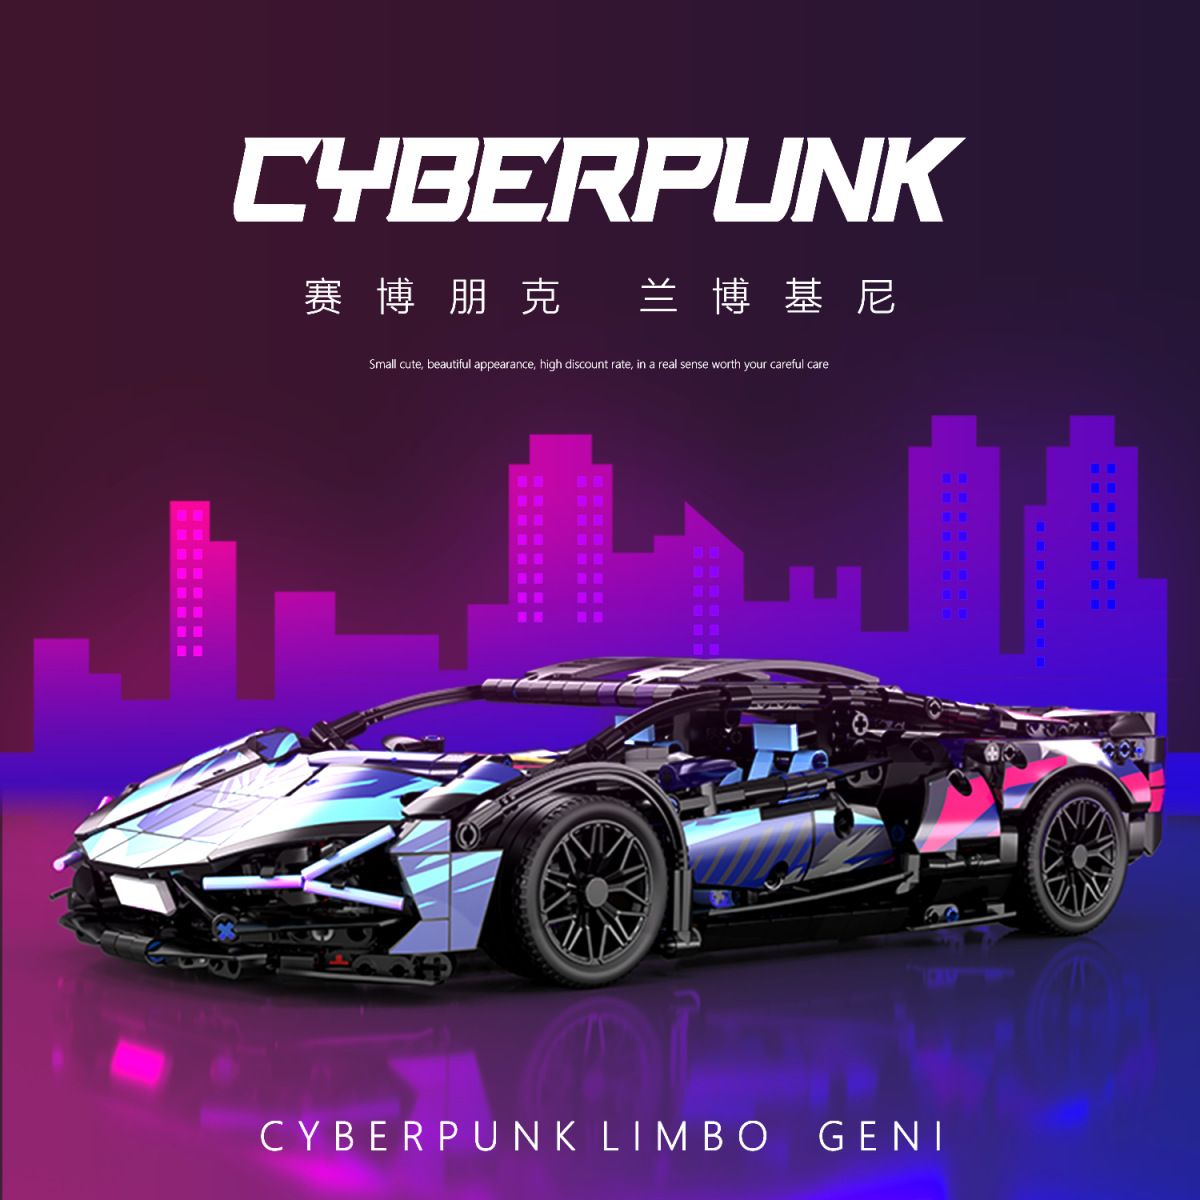  Mô hình xe ô tô lắp ghép Lamborghini CyberPunk galaxy 1314pcs tỉ lệ 1:14 LG021 